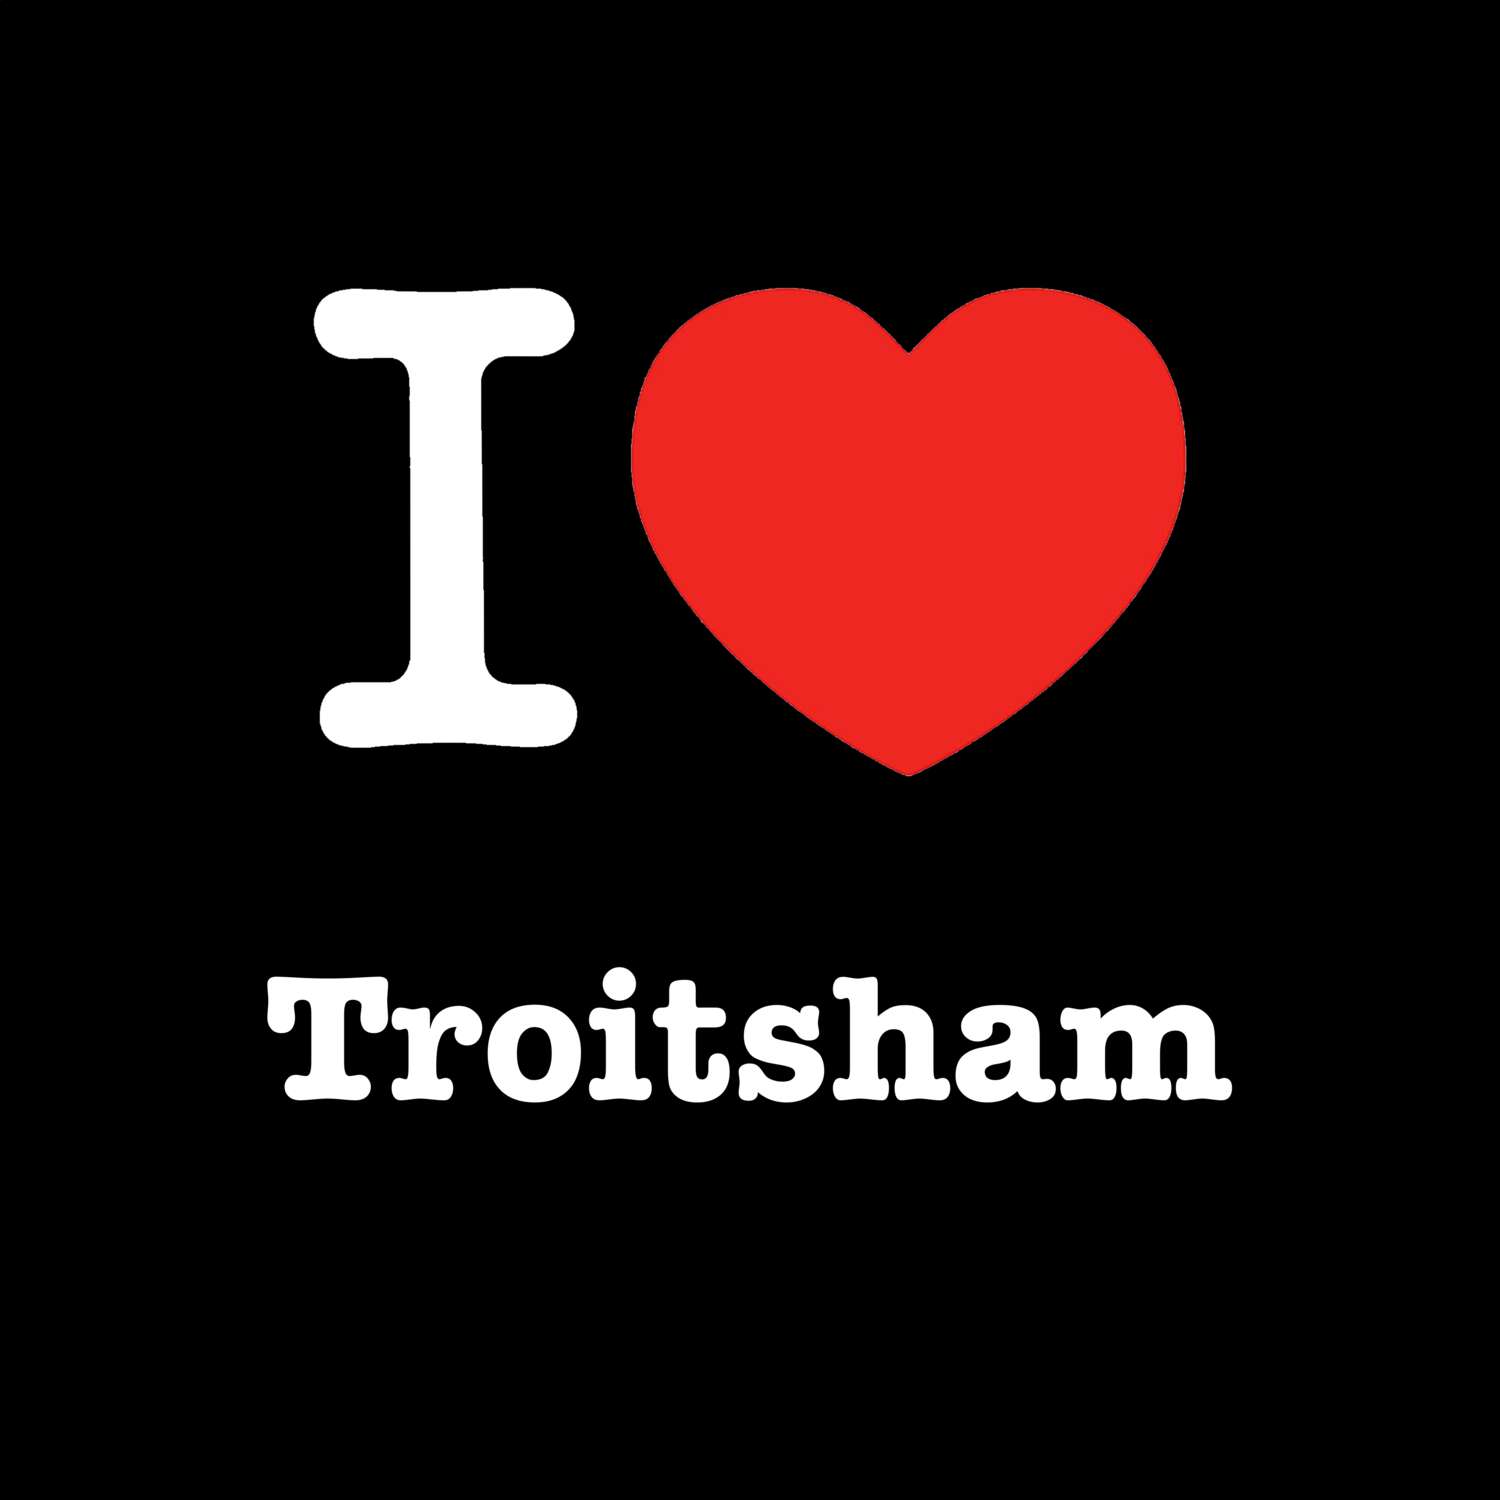 Troitsham T-Shirt »I love«